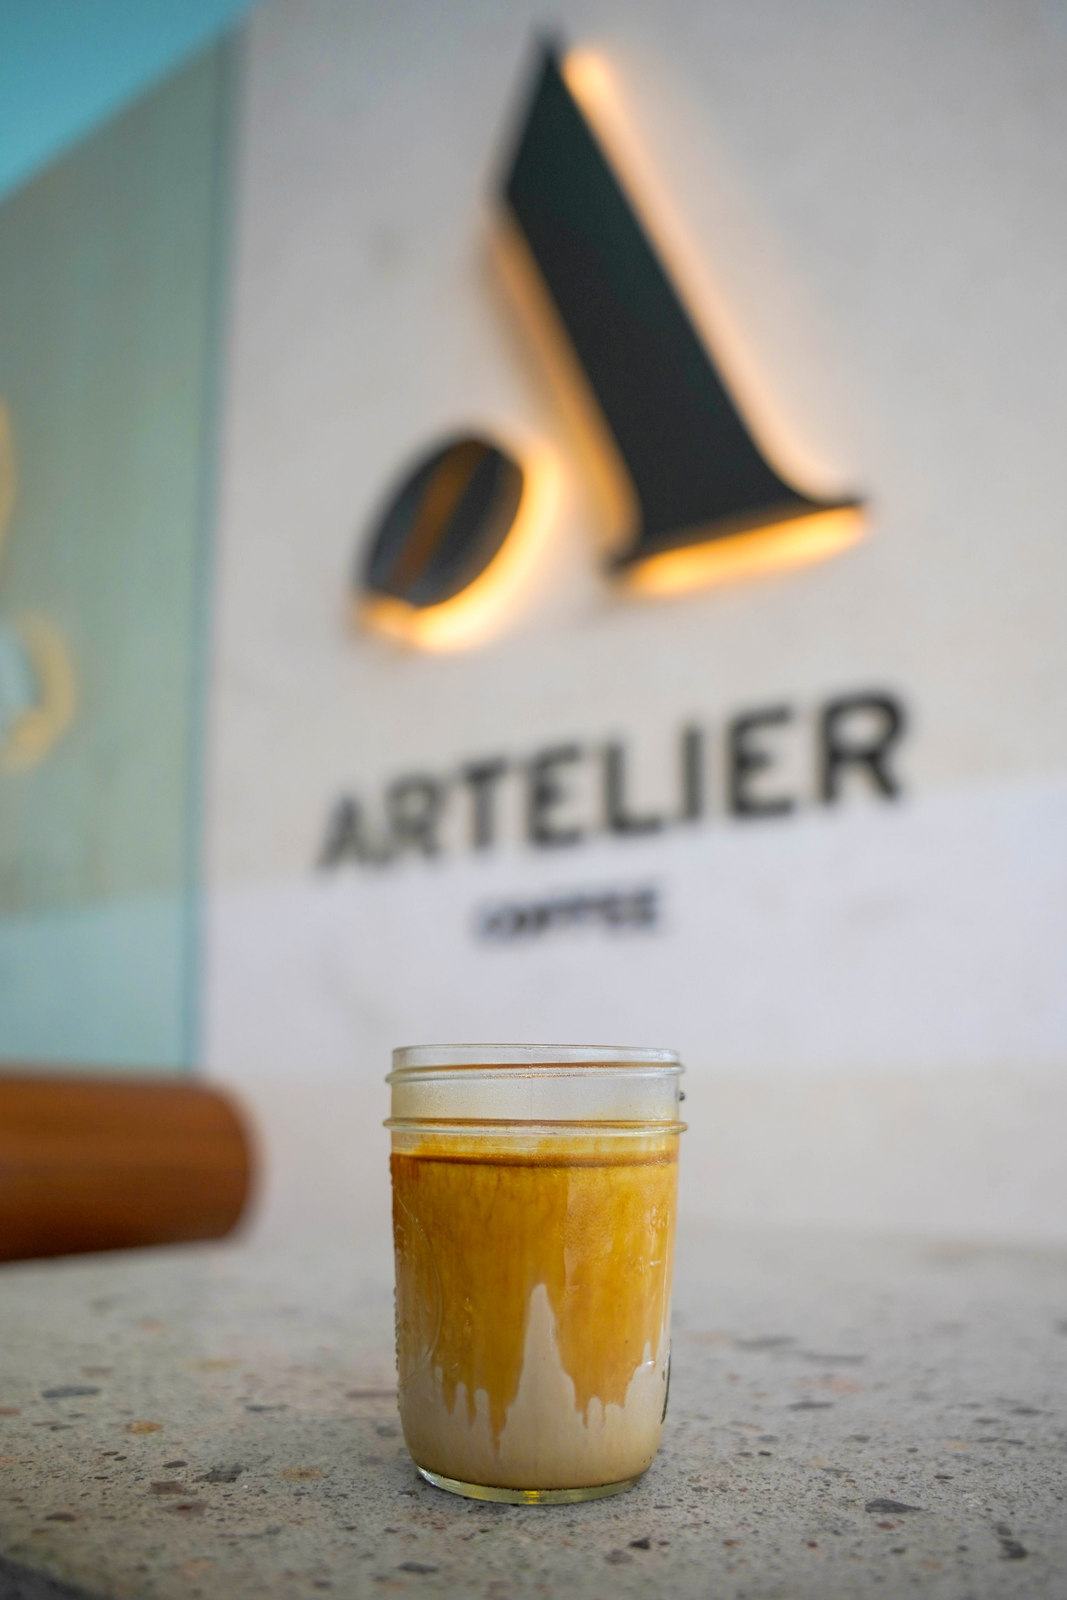 Artelier Coffee-17.jpg